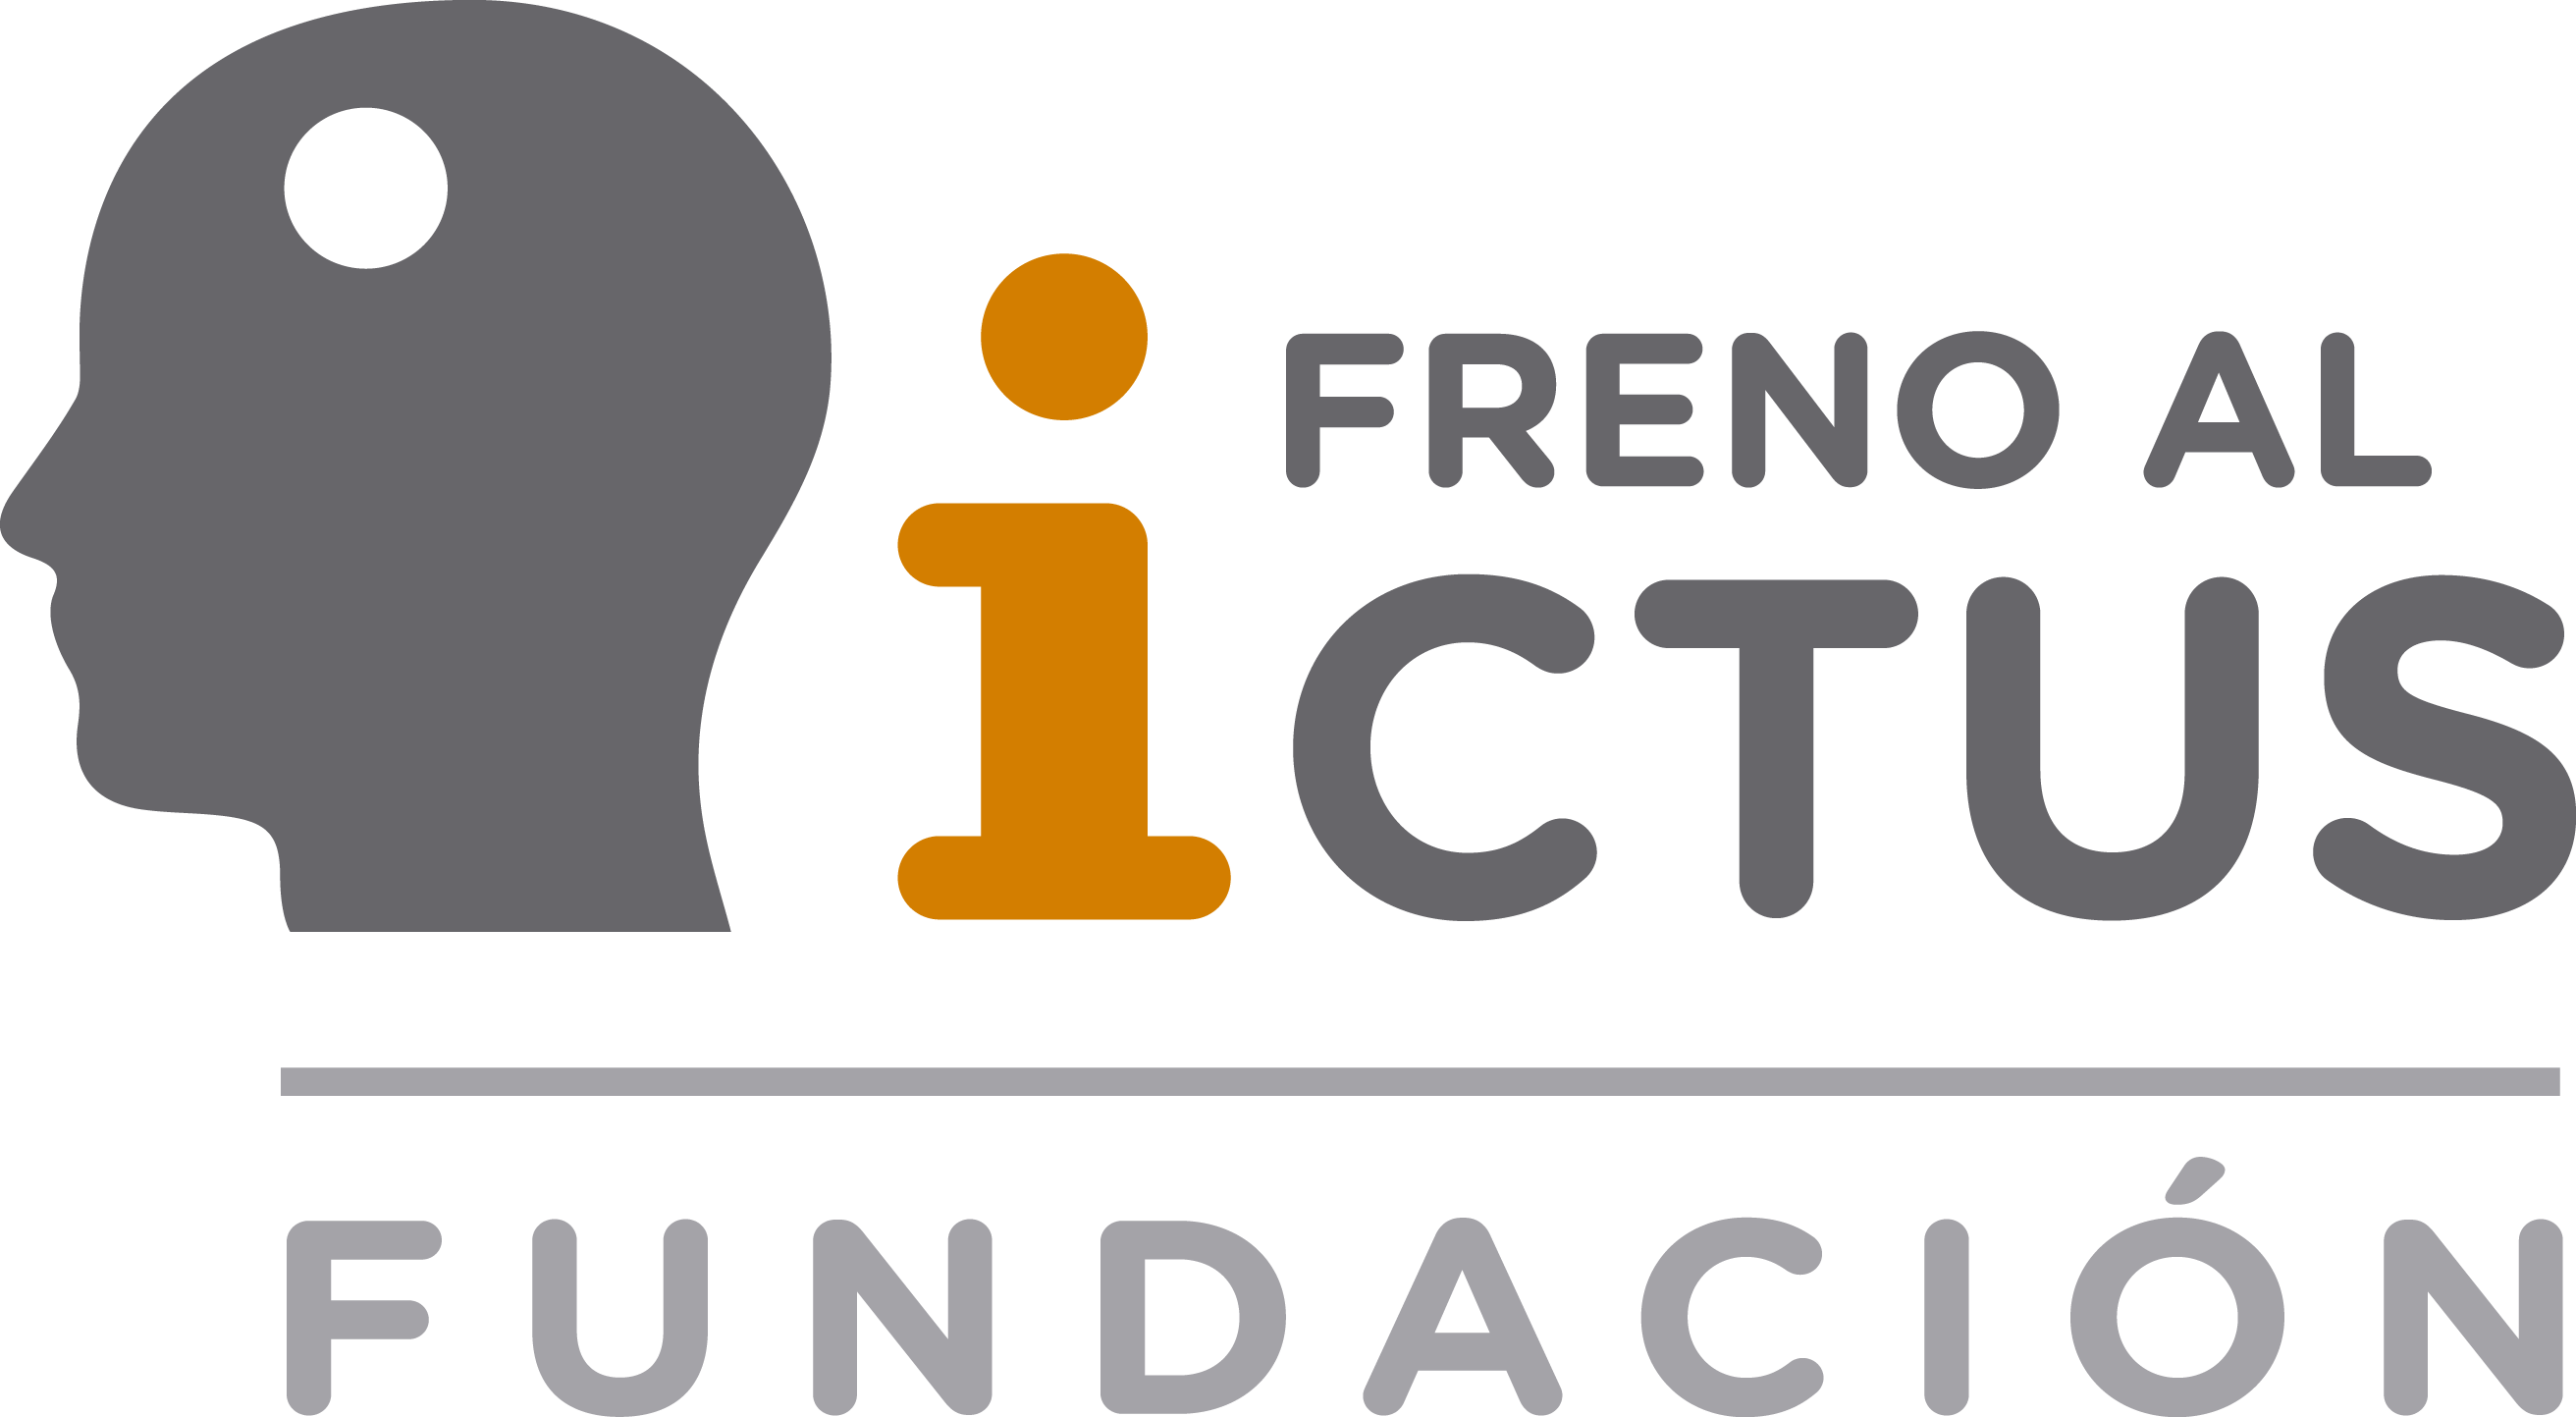 Fundación Freno al ICTUS – Información, investigación e inclusión sobre el Ictus